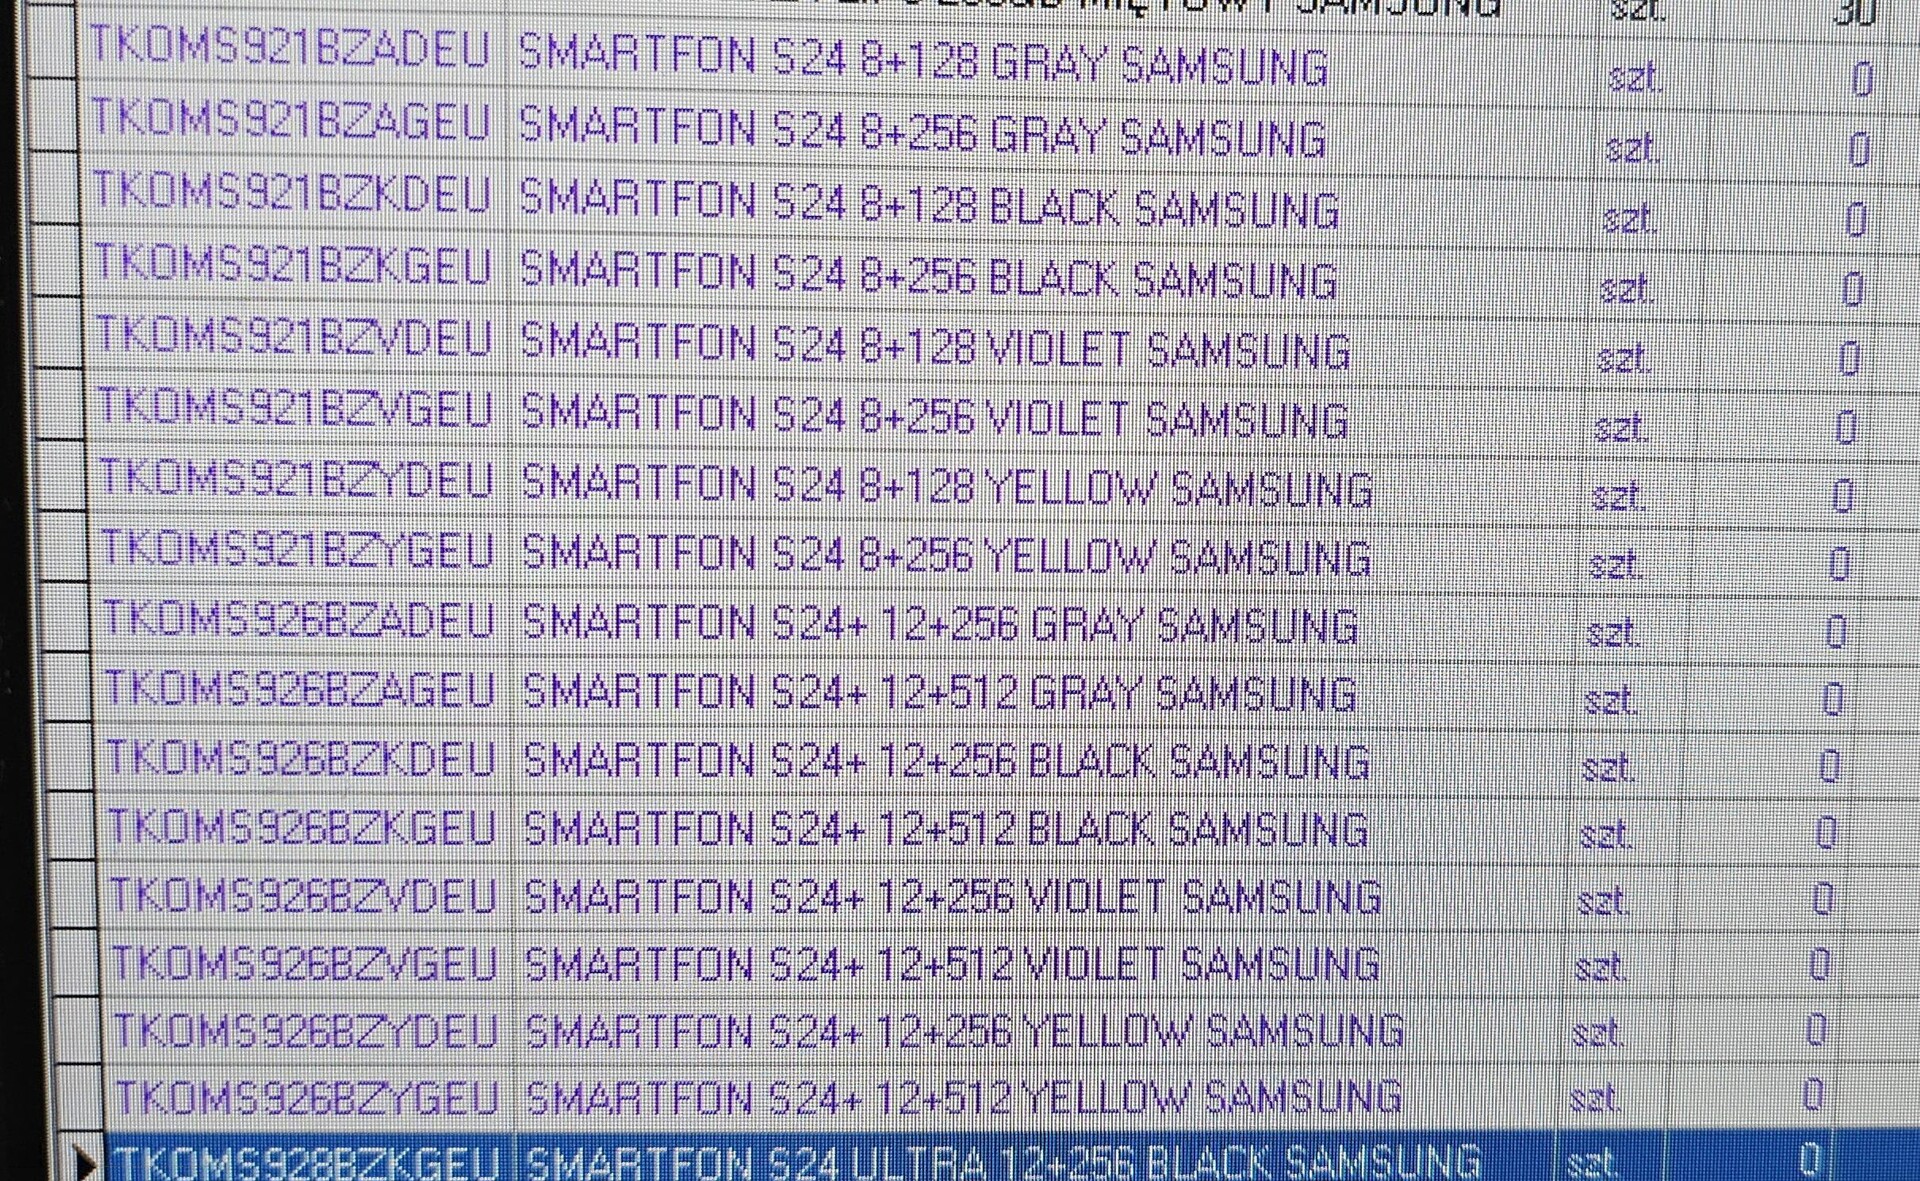 Samsung Galaxy S24, S24+ und S24 Ultra: Leak enthüllt komplette  Datenblätter, Farben und Preise -  News